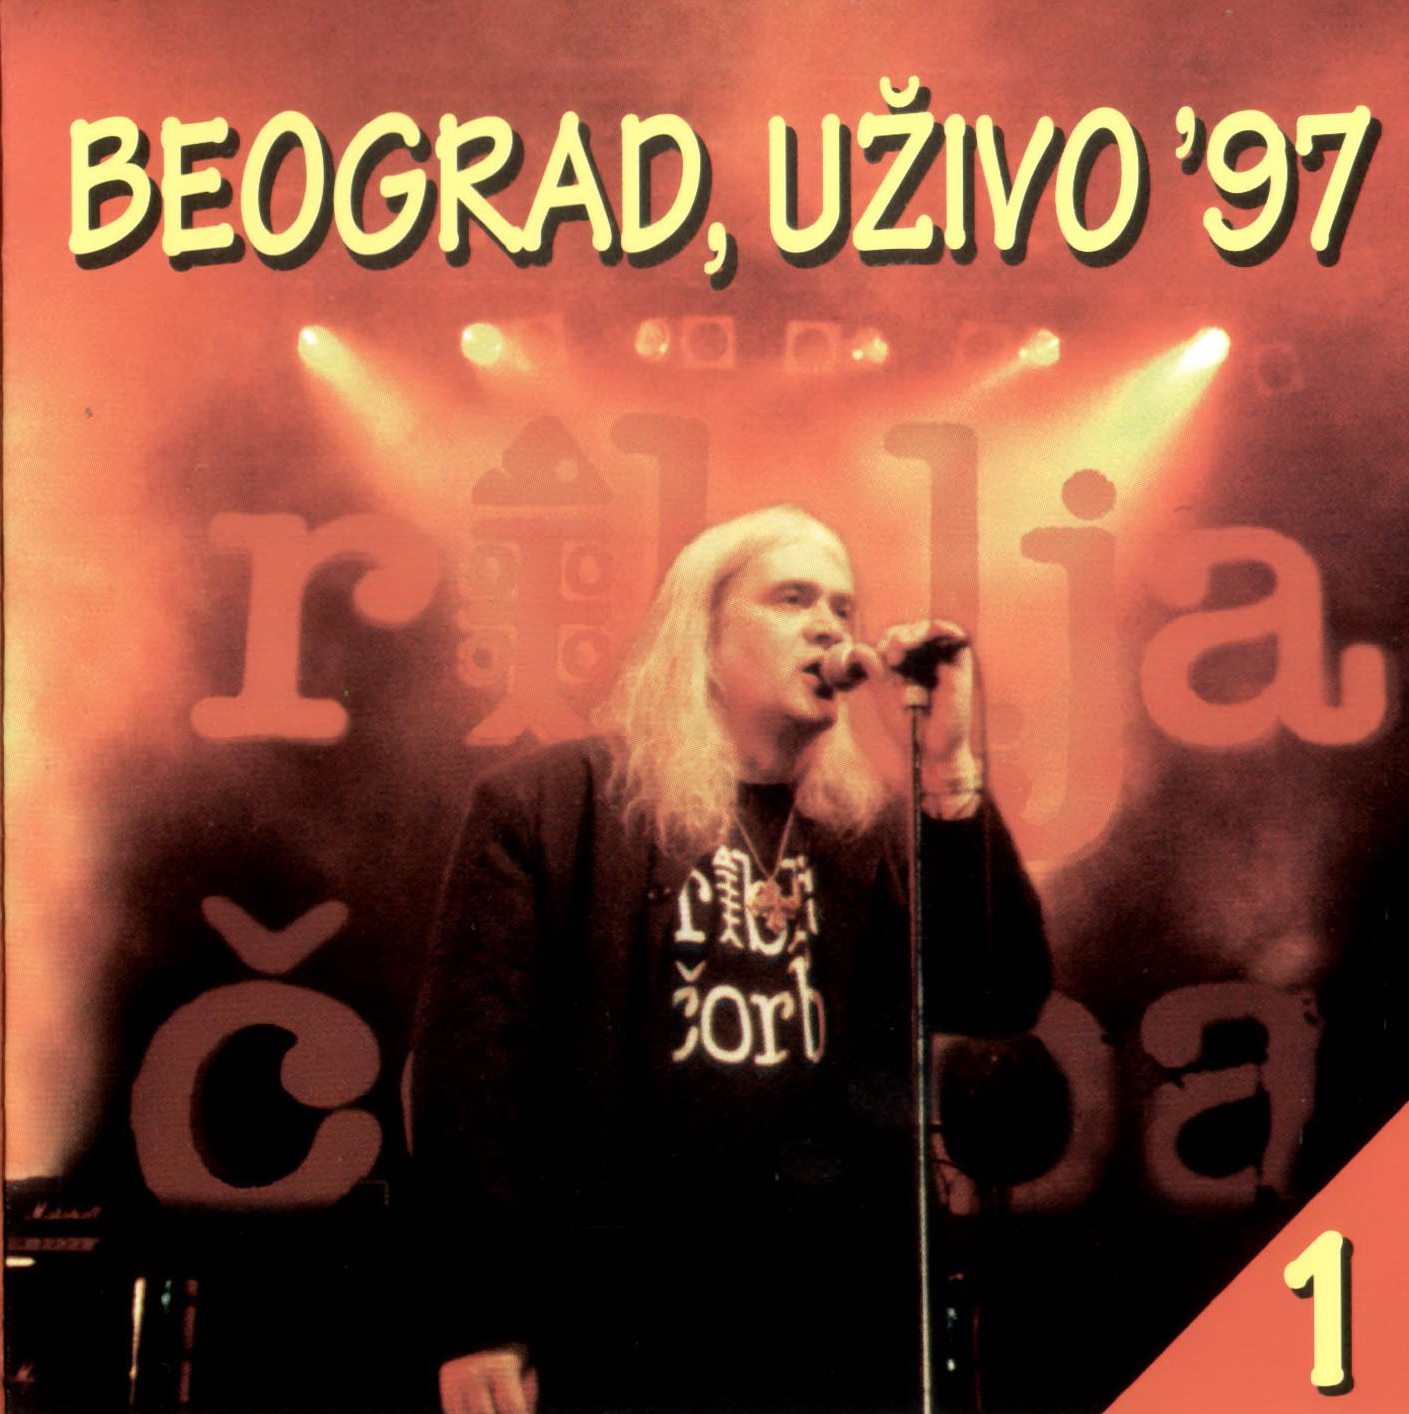 Riblja Corba Beograd uzivo 97 1 front